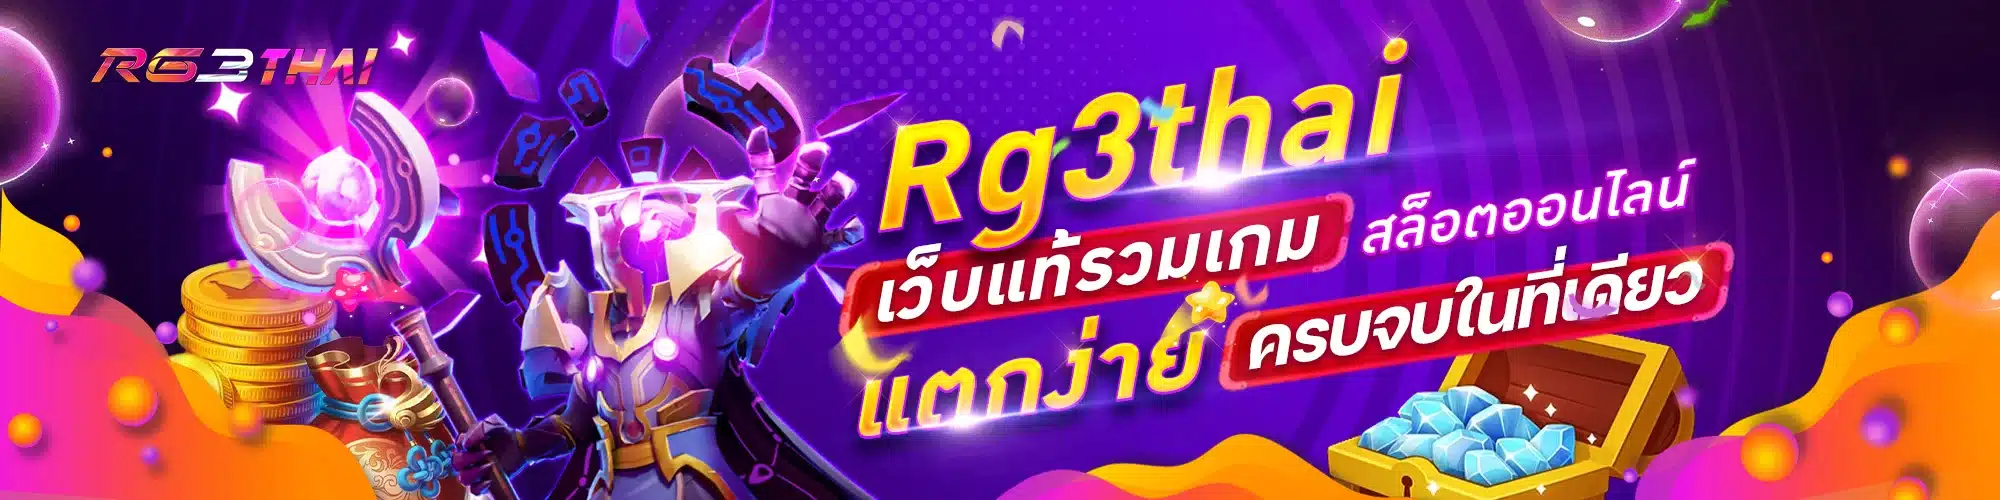 Rg3thai เว็บแท้รวมเกม สล็อตออนไลน์ เล่นง่าย ปลอดภัยแน่นอน